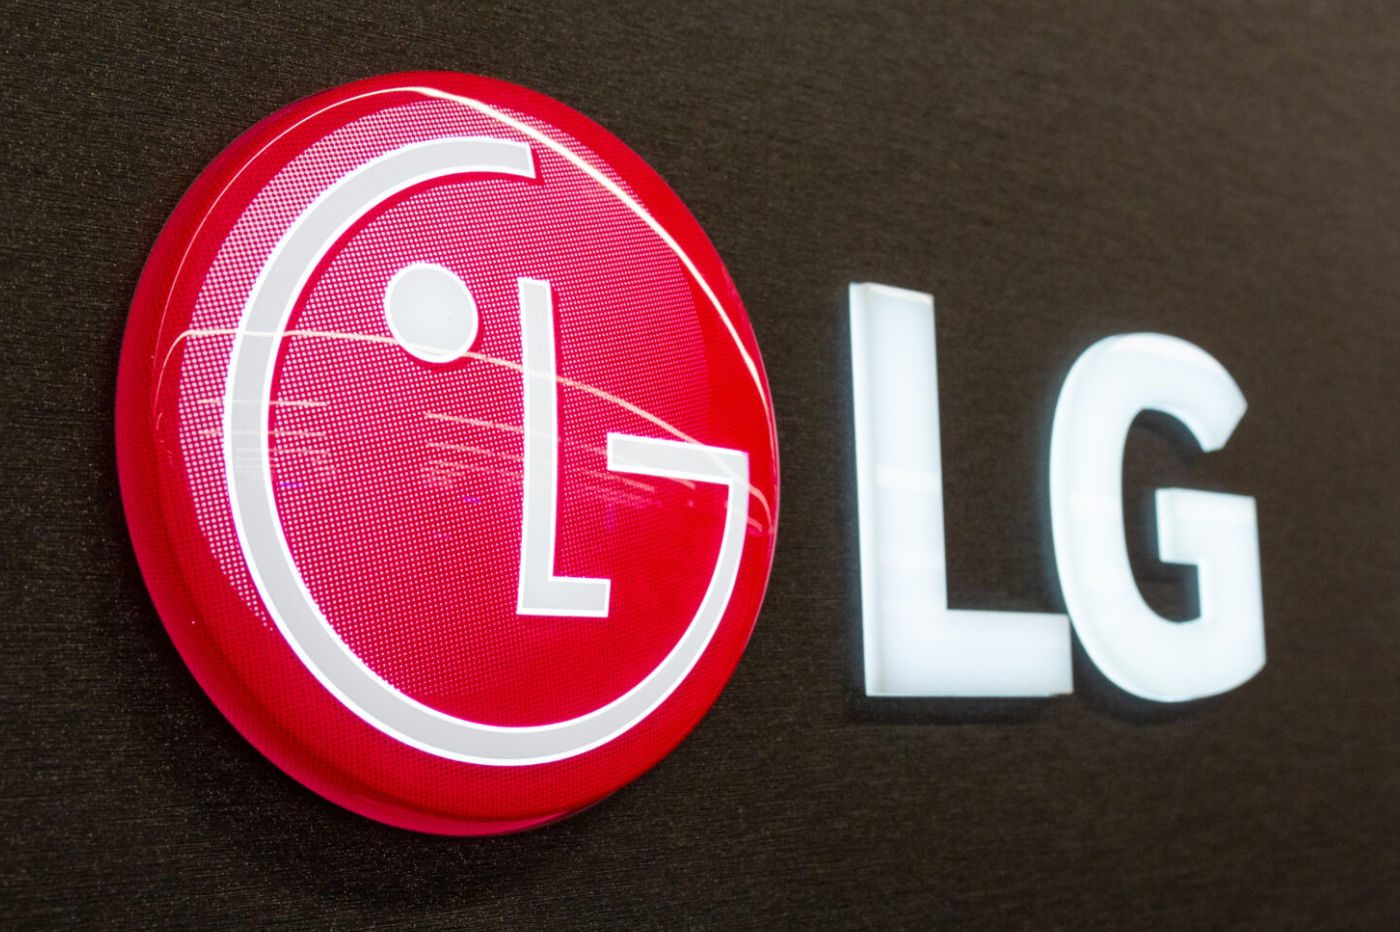 Lg-logo